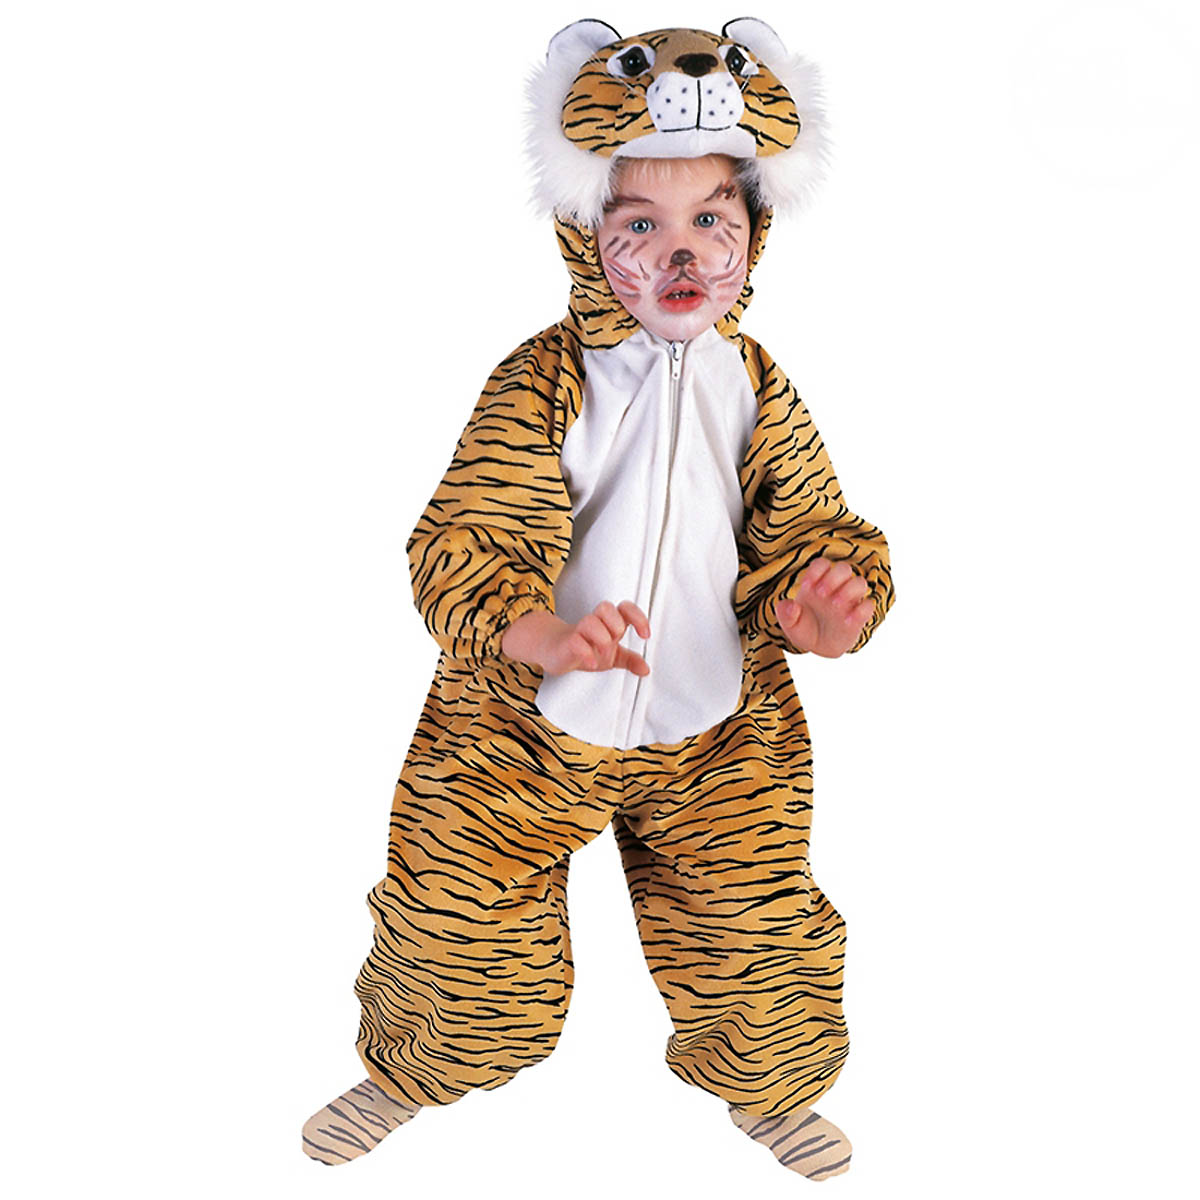 Orl Tiger Kinder Kostüm als Raubkatze zu Karneval Fasching 